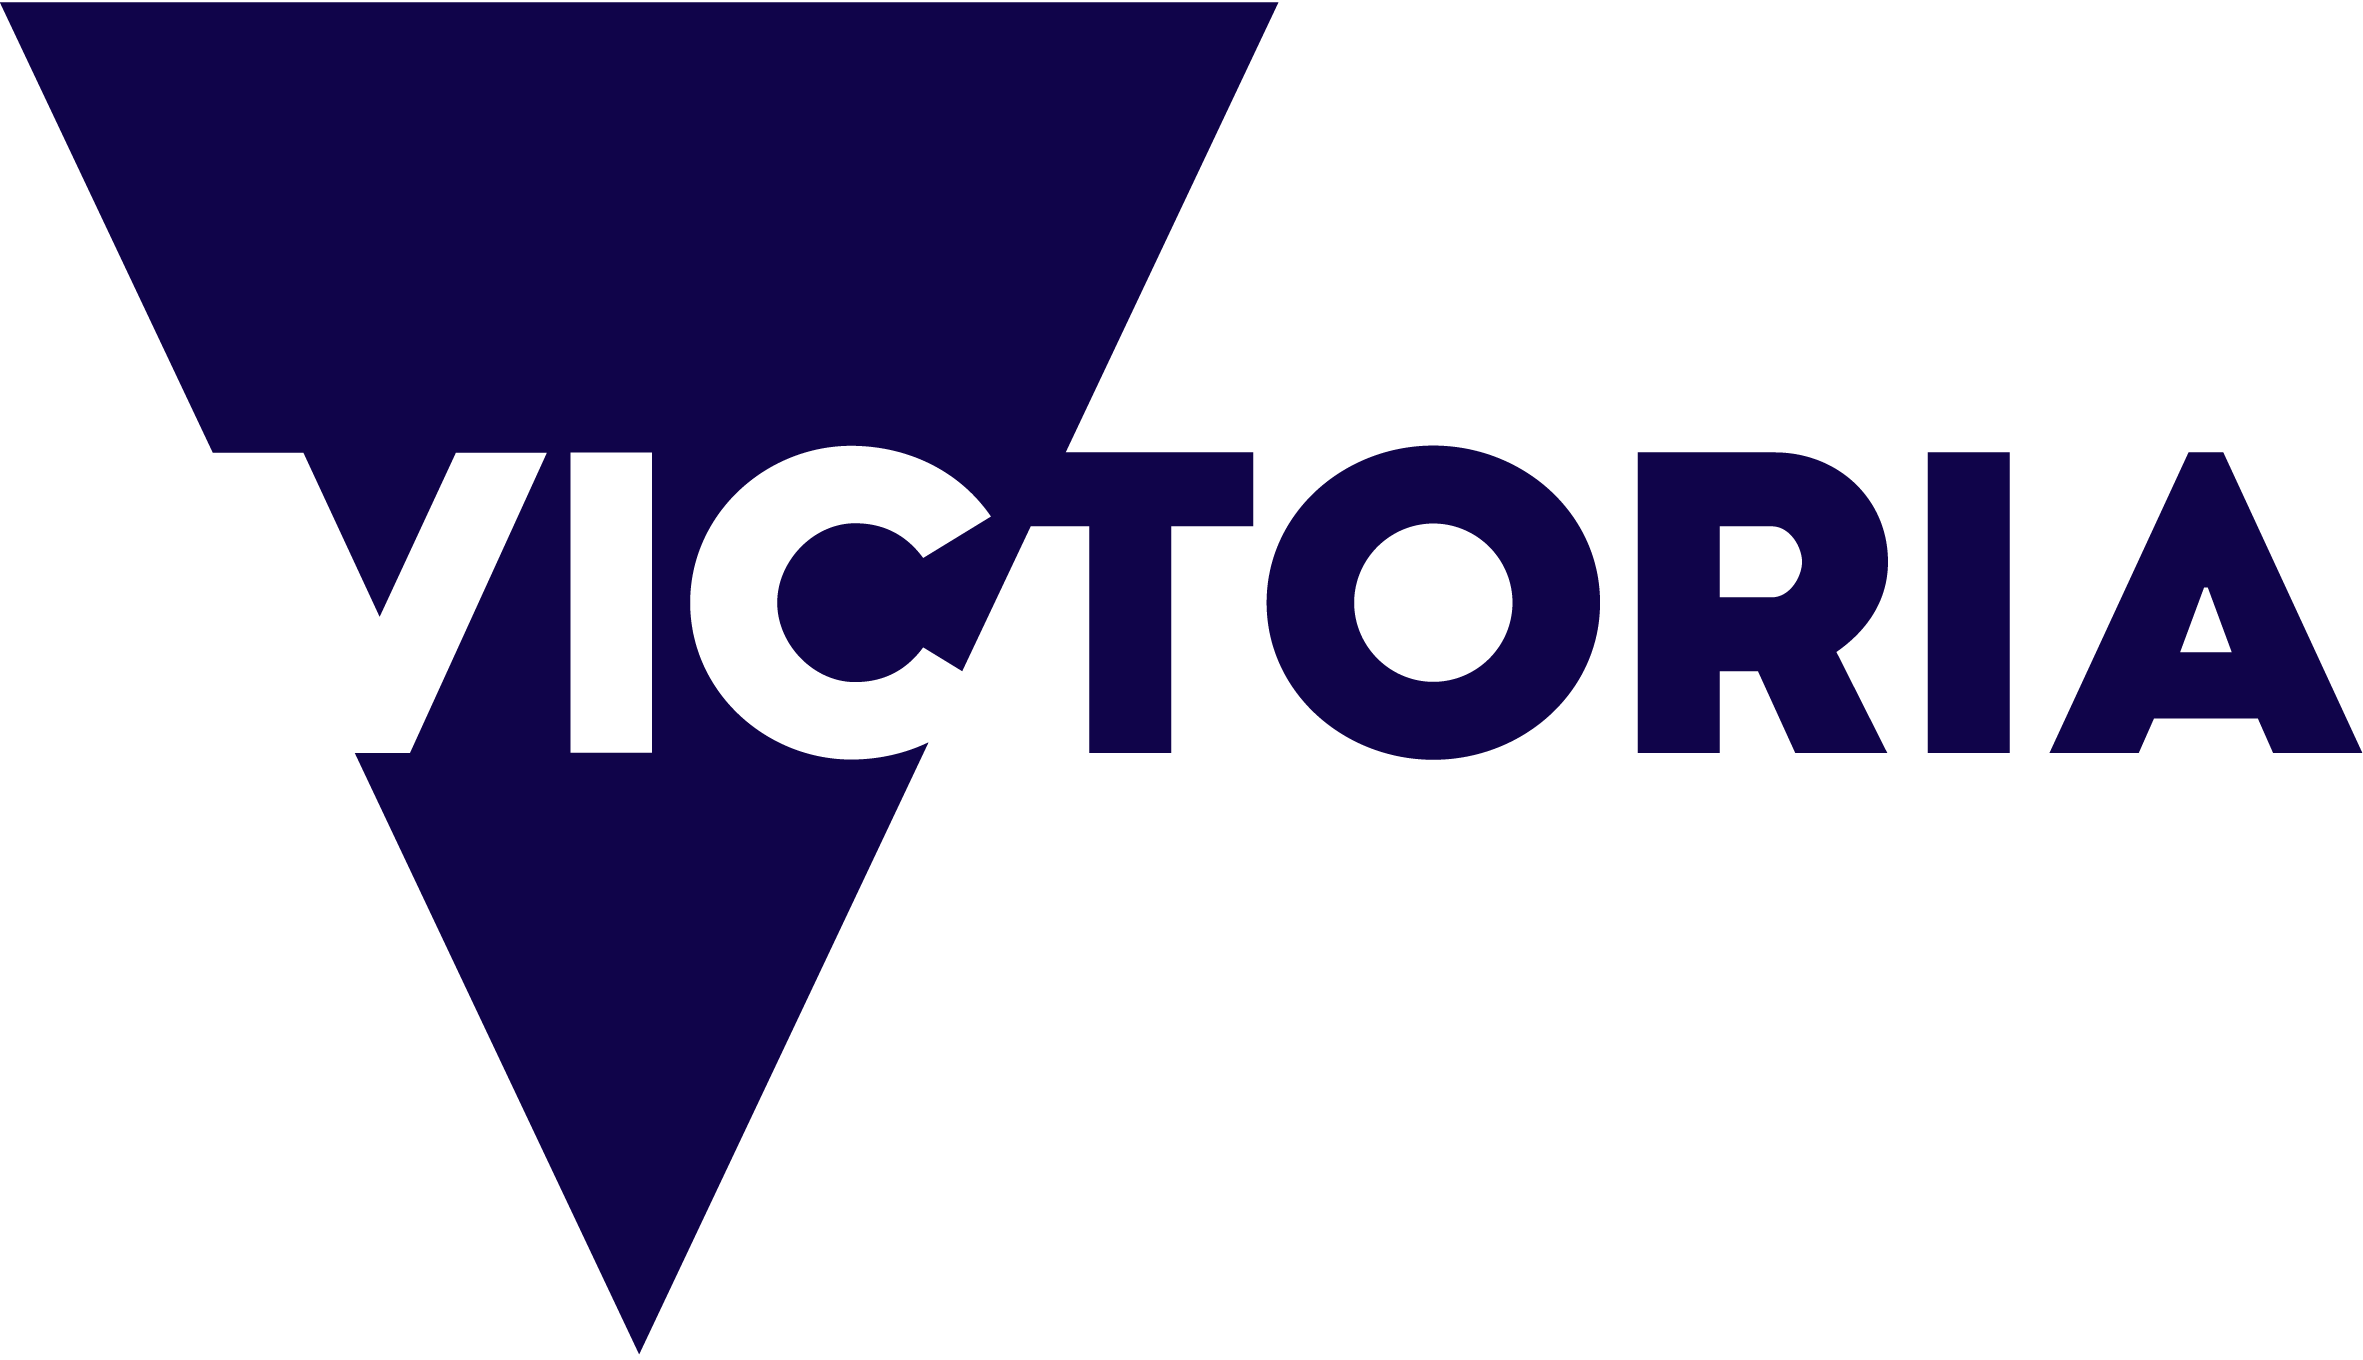 Victoria Logo pms 2765 cmyk.png